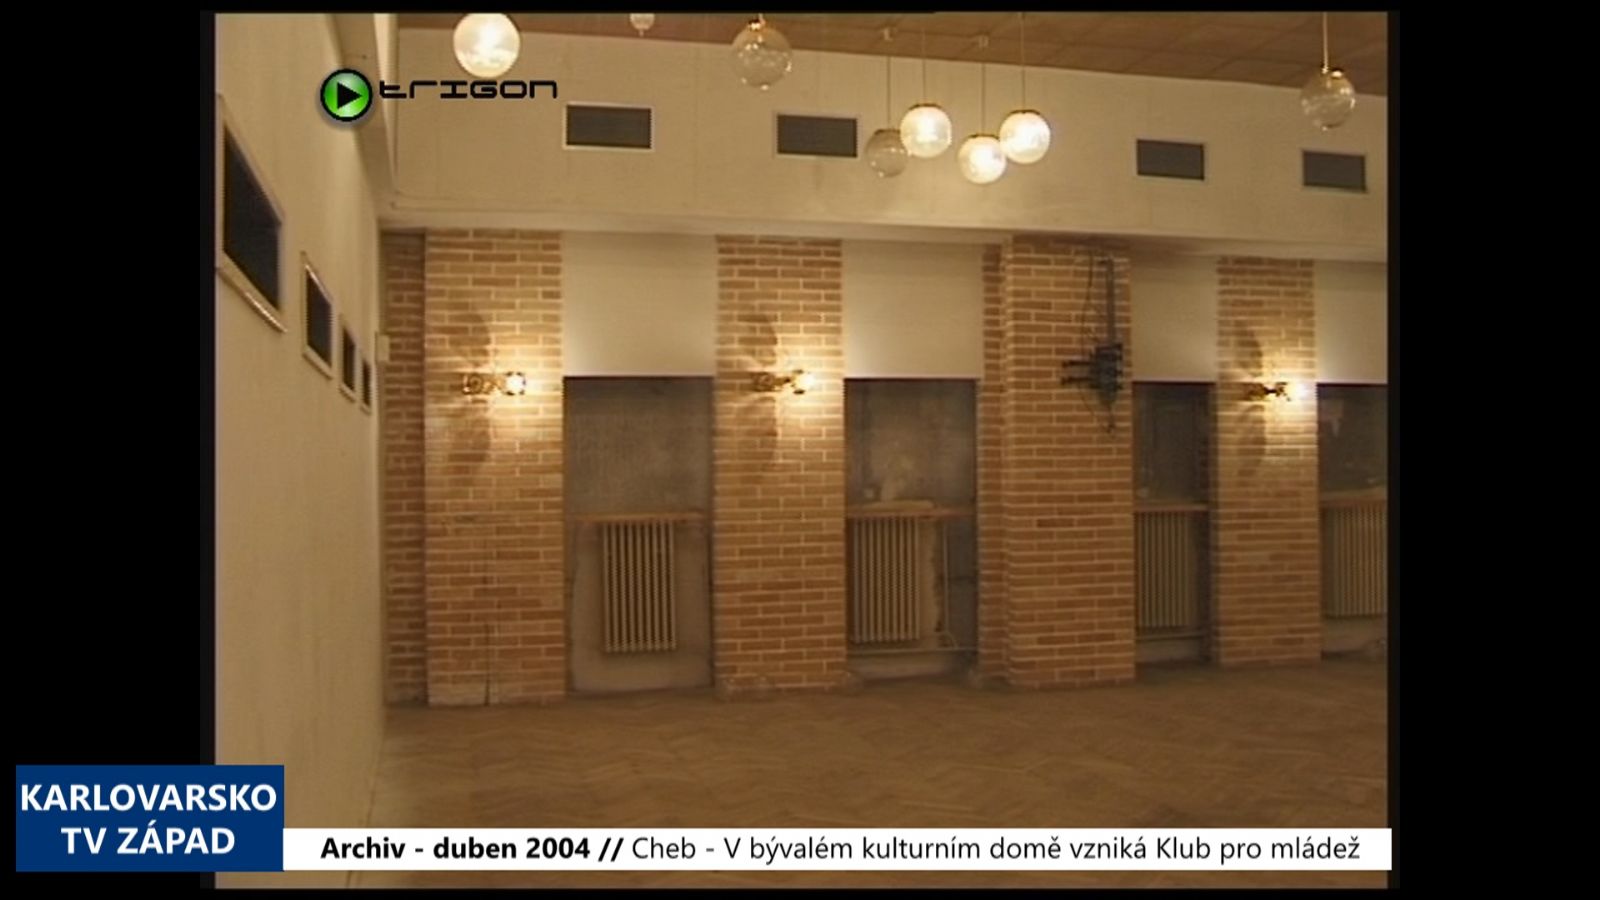 2004 – Cheb: V bývalém kulturním domě vzniká Klub pro mládež (TV Západ)